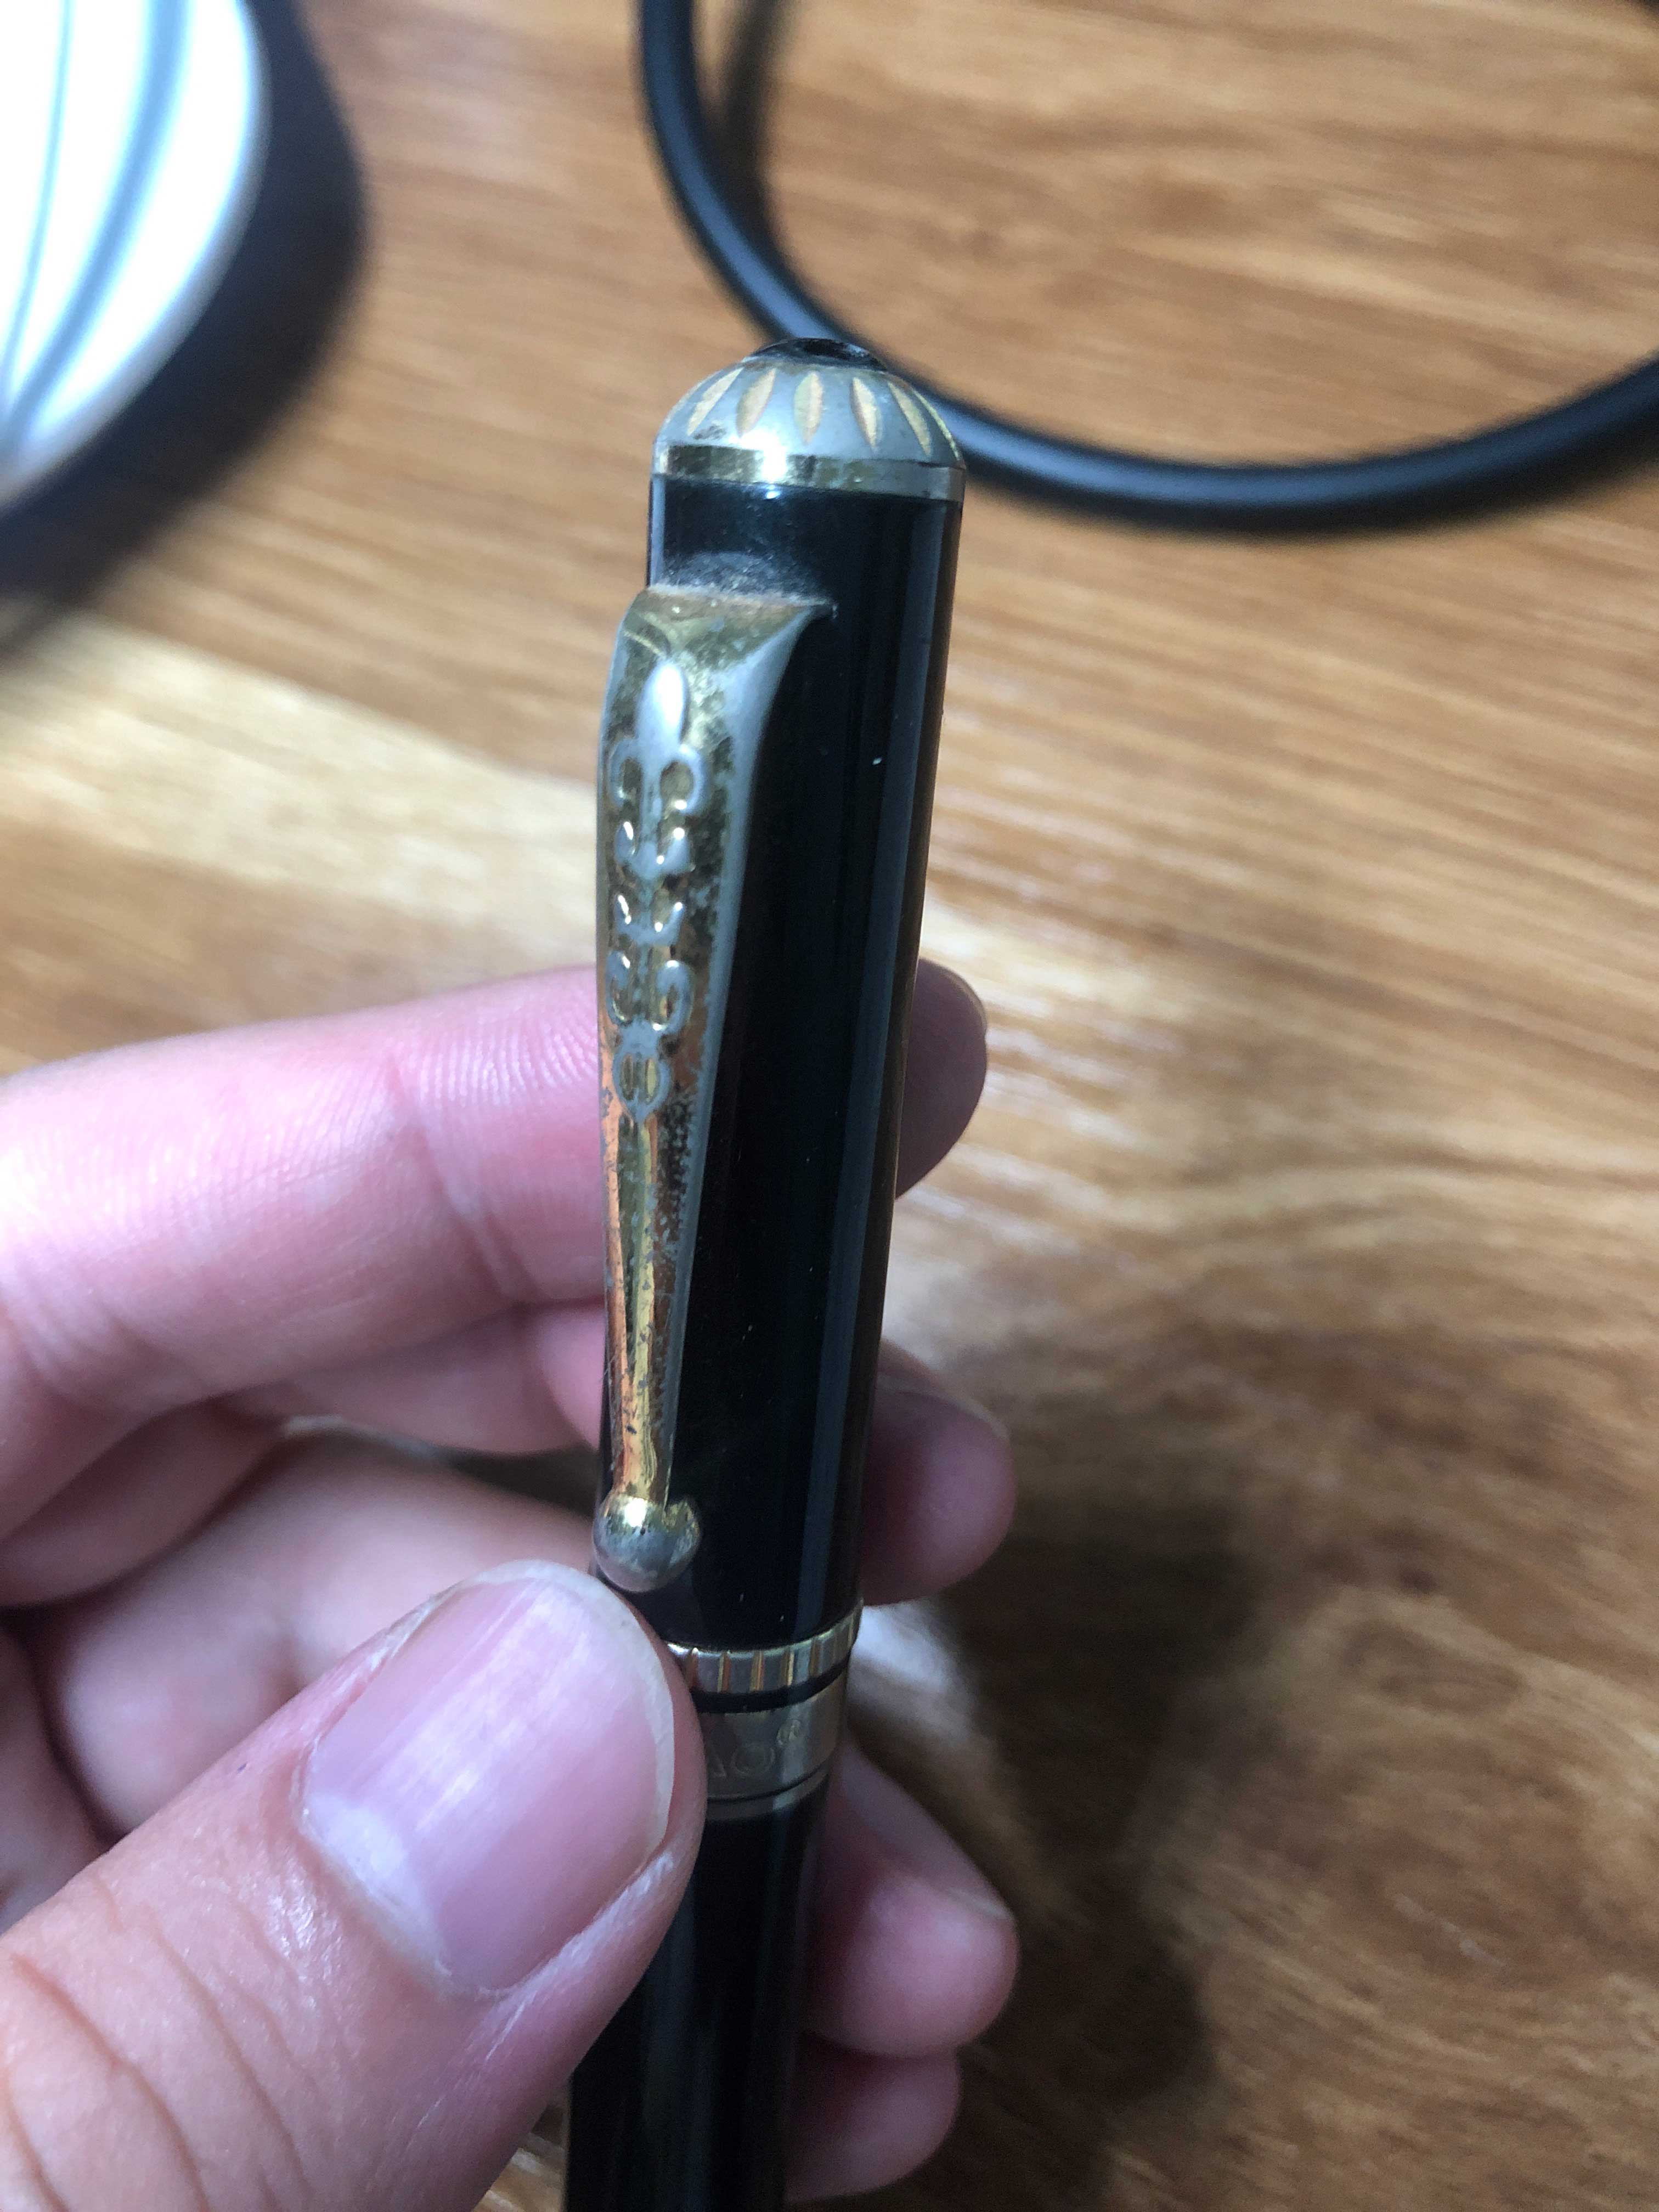 请问这只金豪钢笔的具体型号是什么呀，谢谢大家